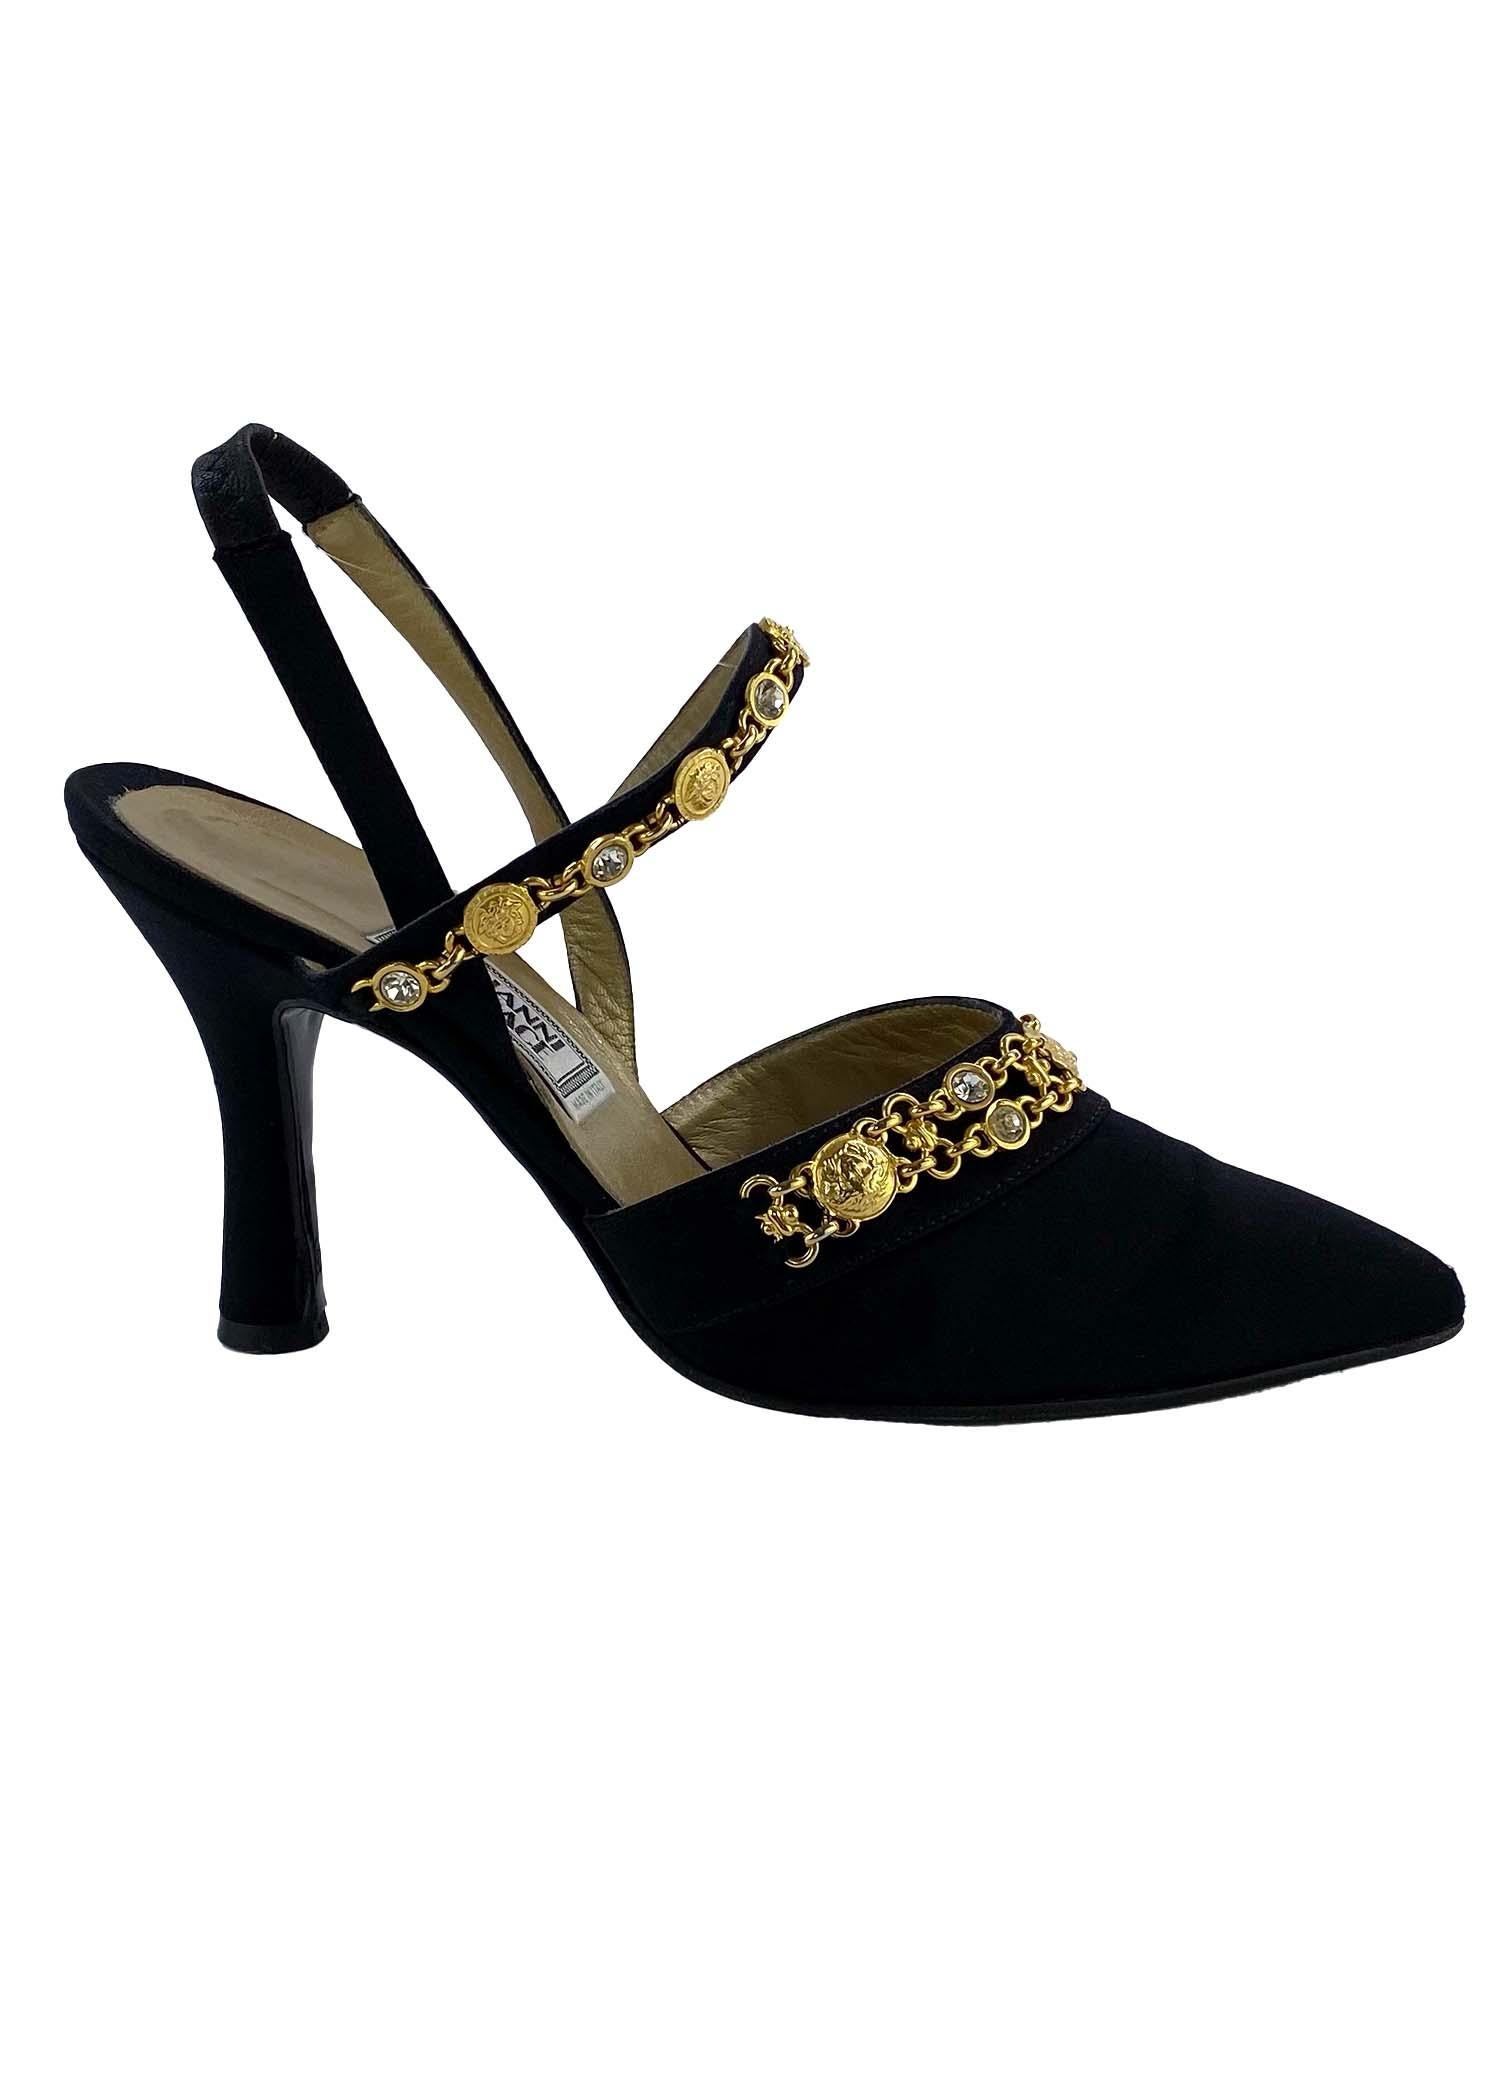 Nous vous présentons une superbe paire de chaussures Gianni Versace, créée par le créateur de la maison lui-même. Cette fabuleuse paire de talons à bride en satin est parfaitement rehaussée de médaillons Versace Medusa dorés et de chaînes en strass.